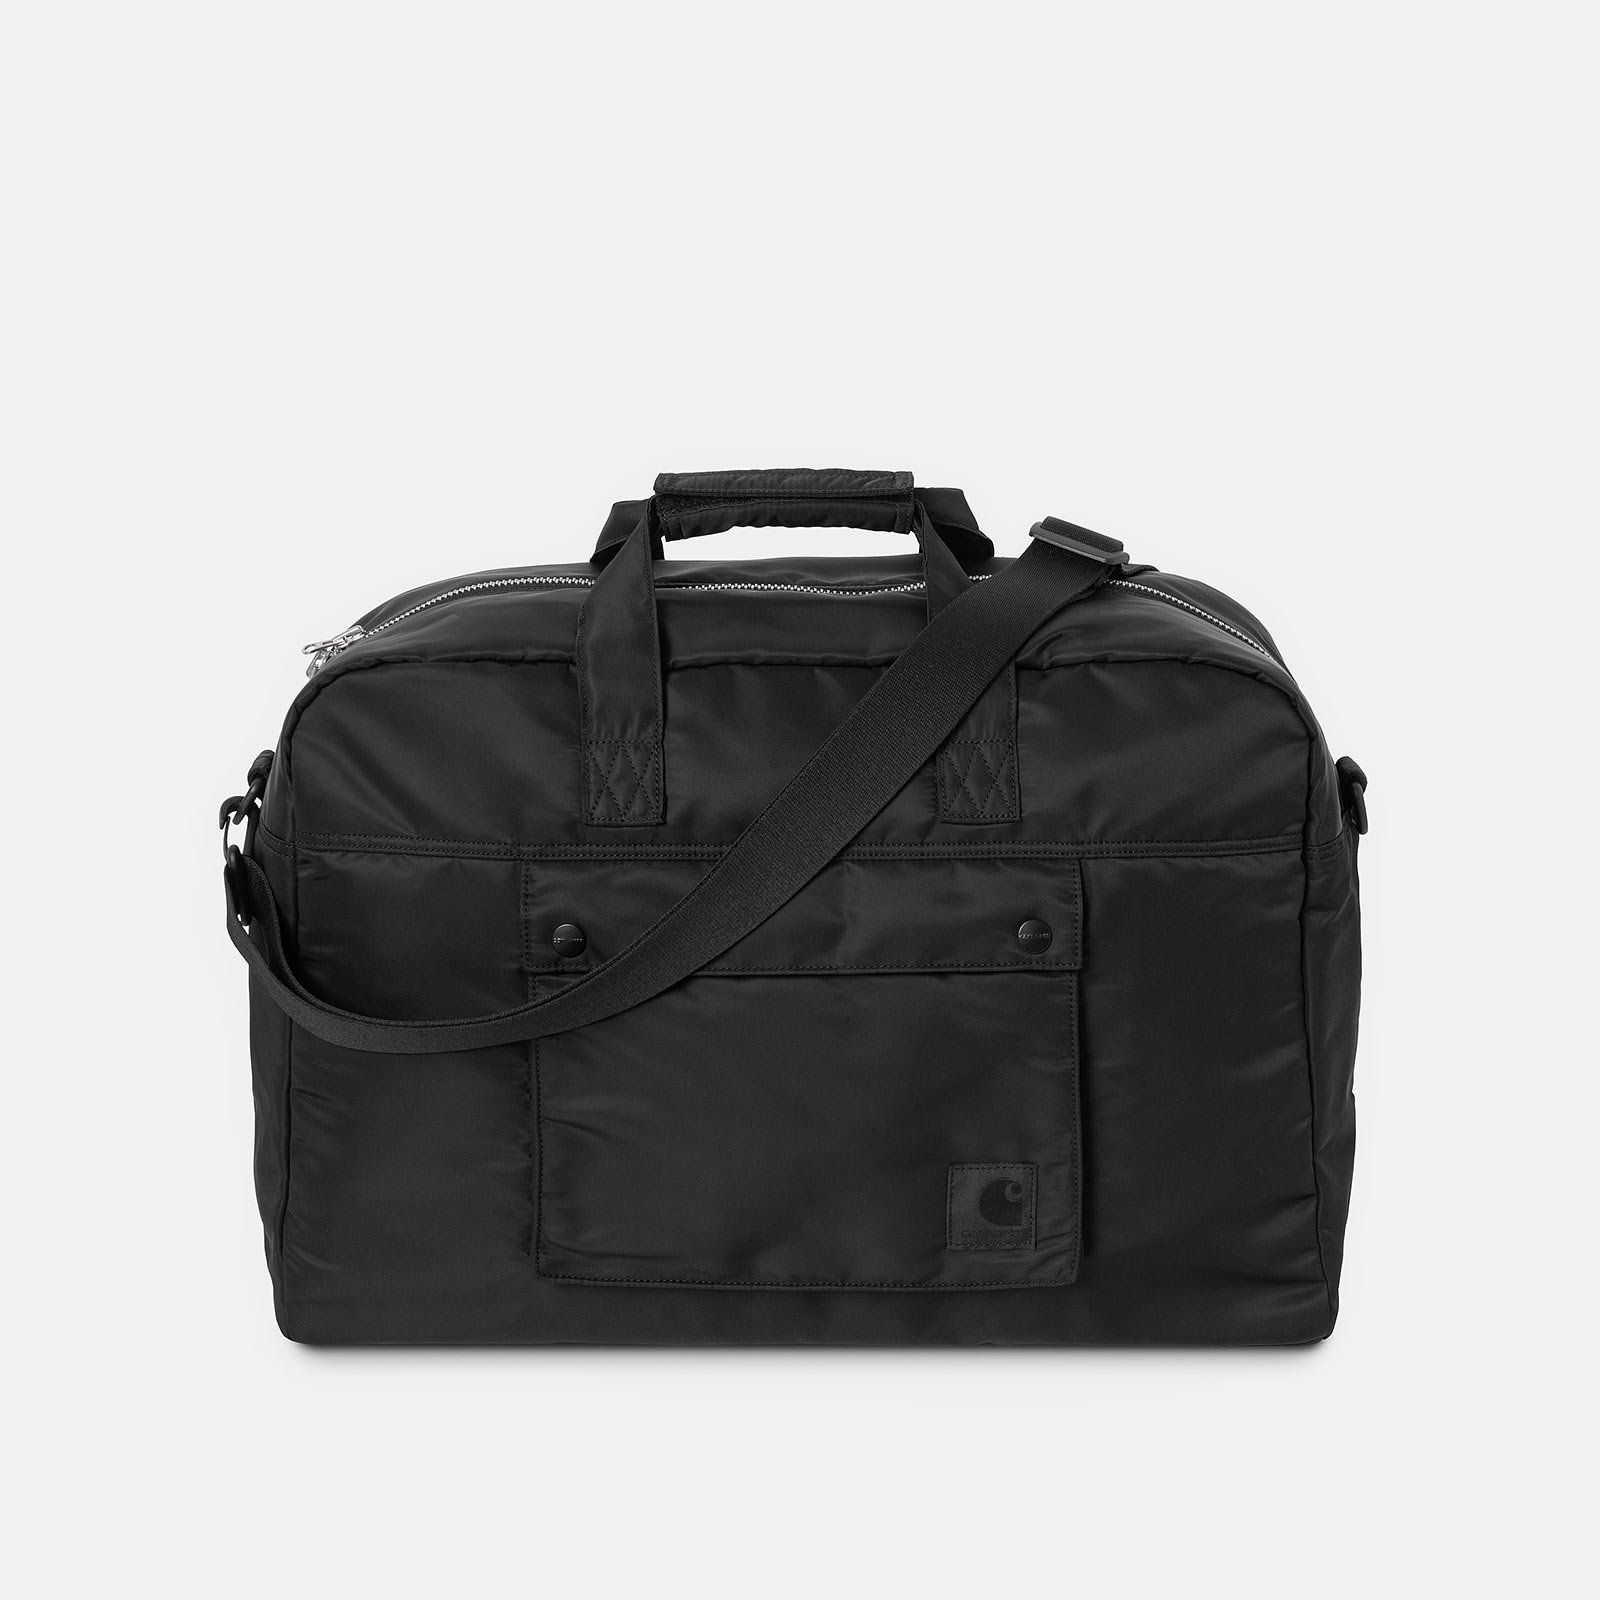  черная сумка Carhartt WIP Otley Weekend Bag I033105-black - цена, описание, фото 1